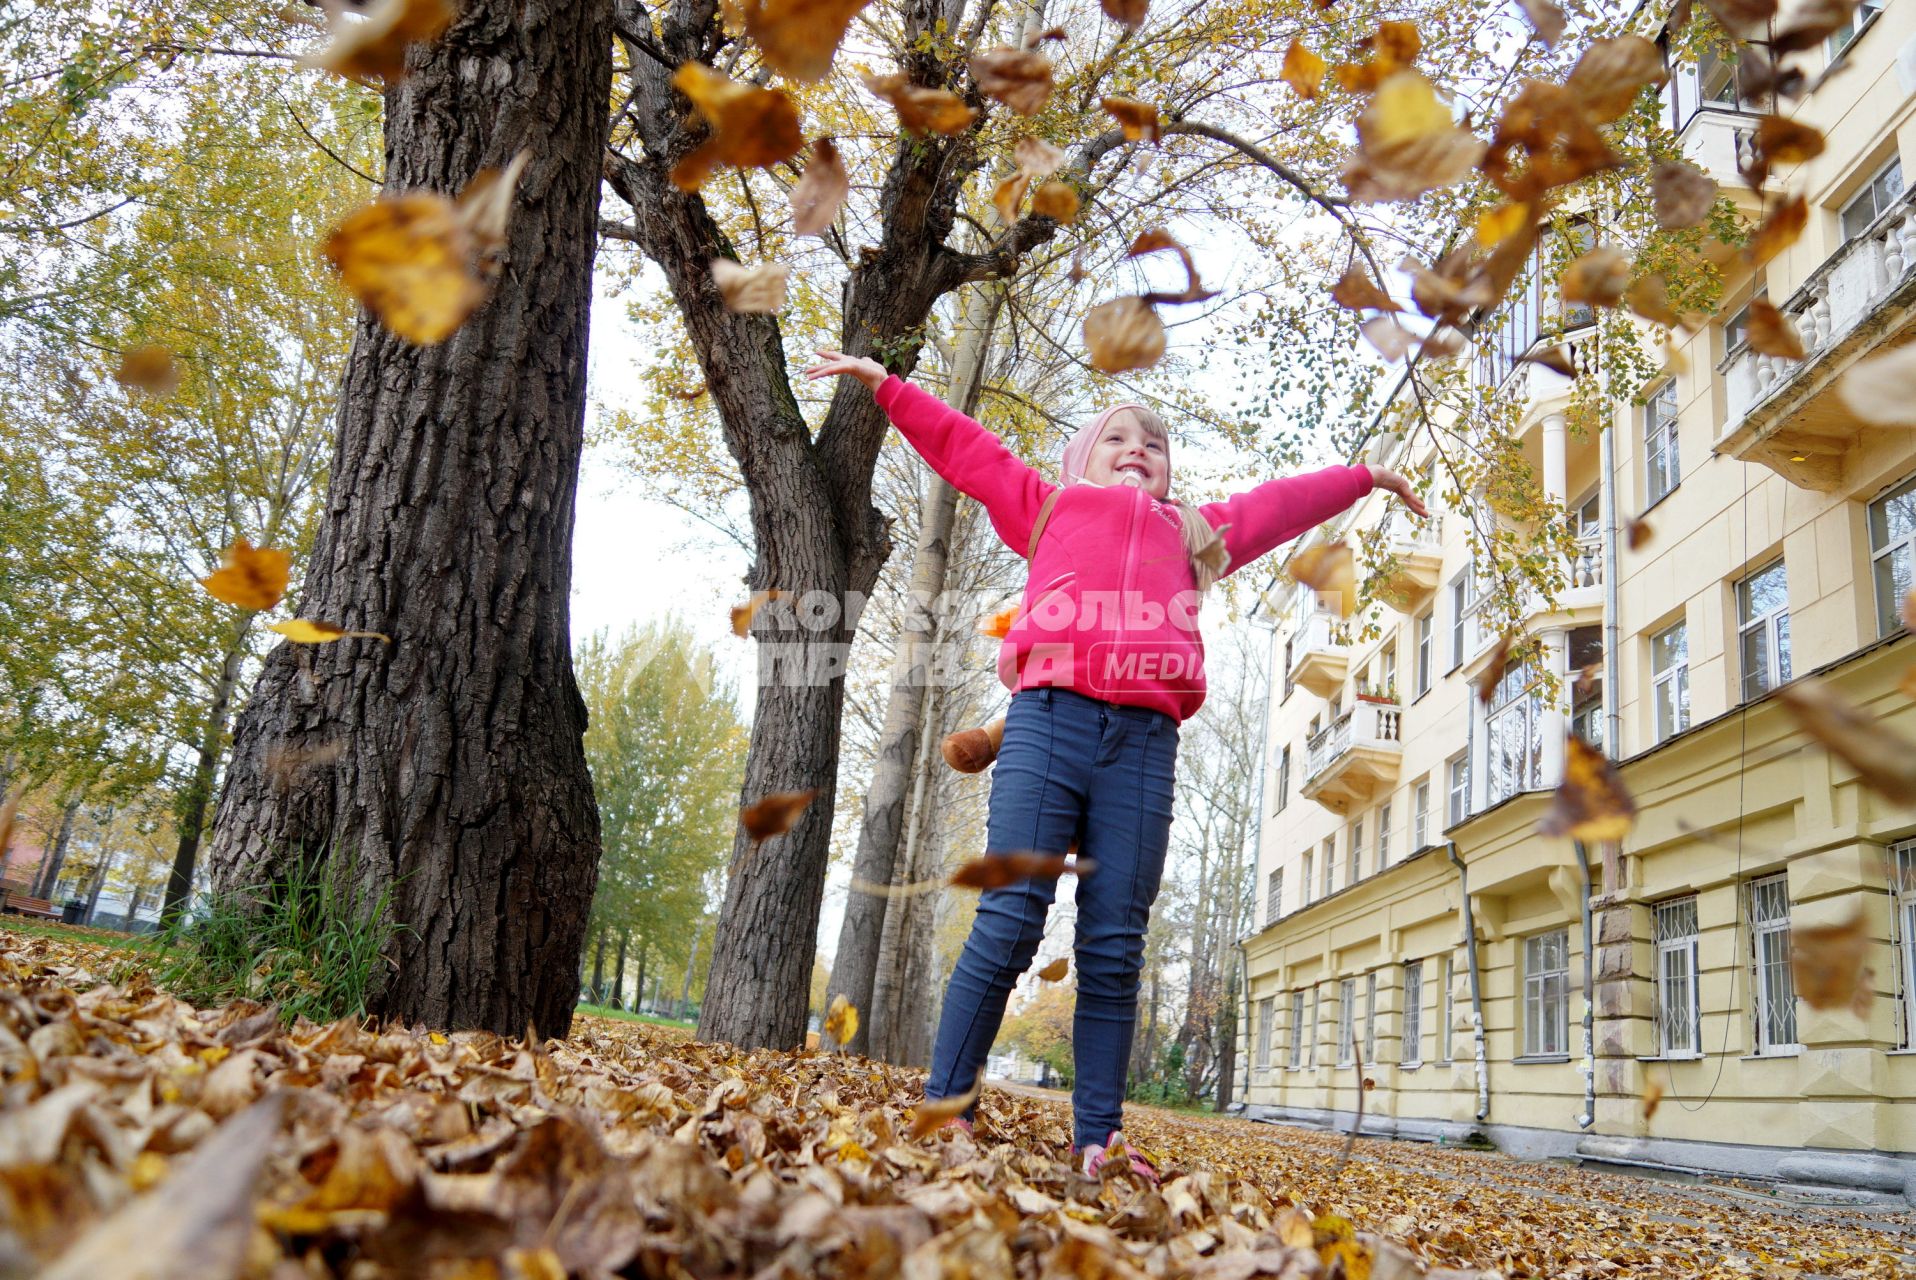 Екатеринбург. Девочка гуляет по парку, усыпанному желтыми опавшими листьями.